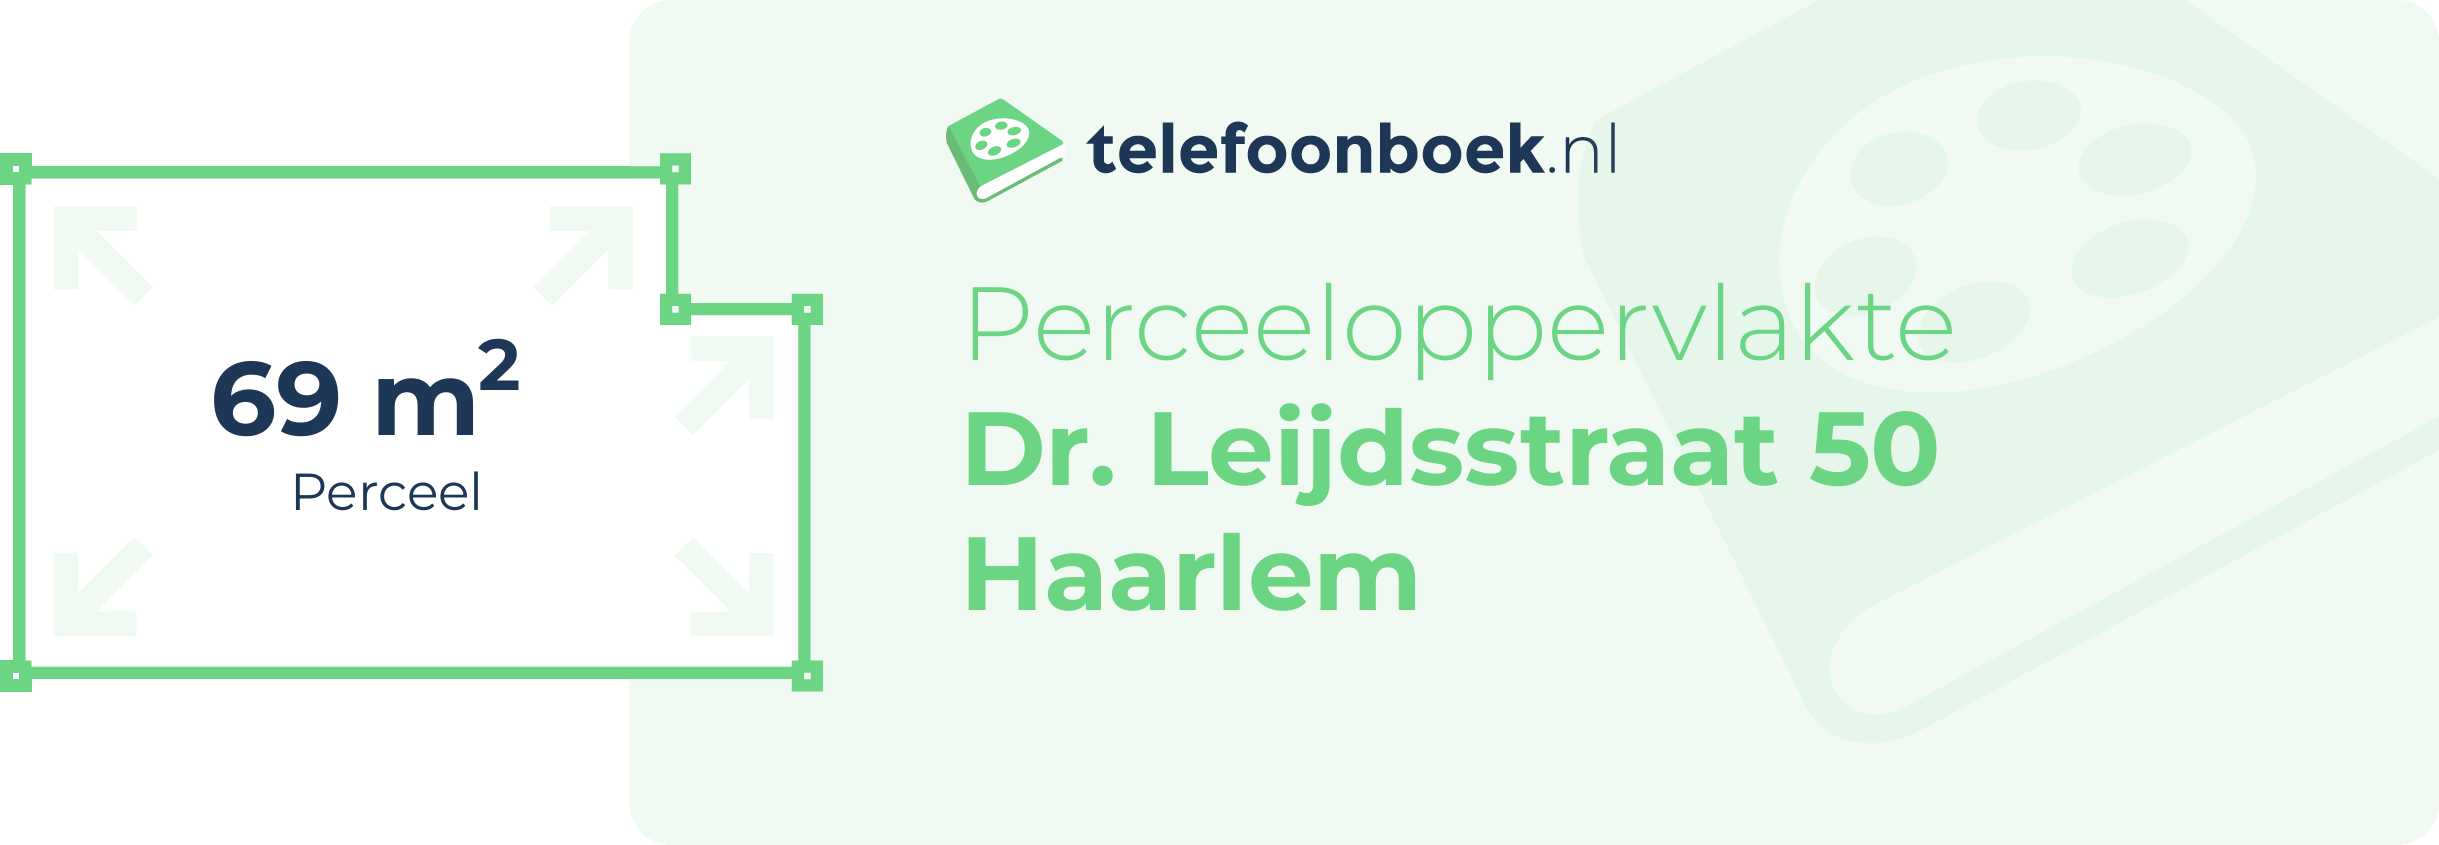 Perceeloppervlakte Dr. Leijdsstraat 50 Haarlem